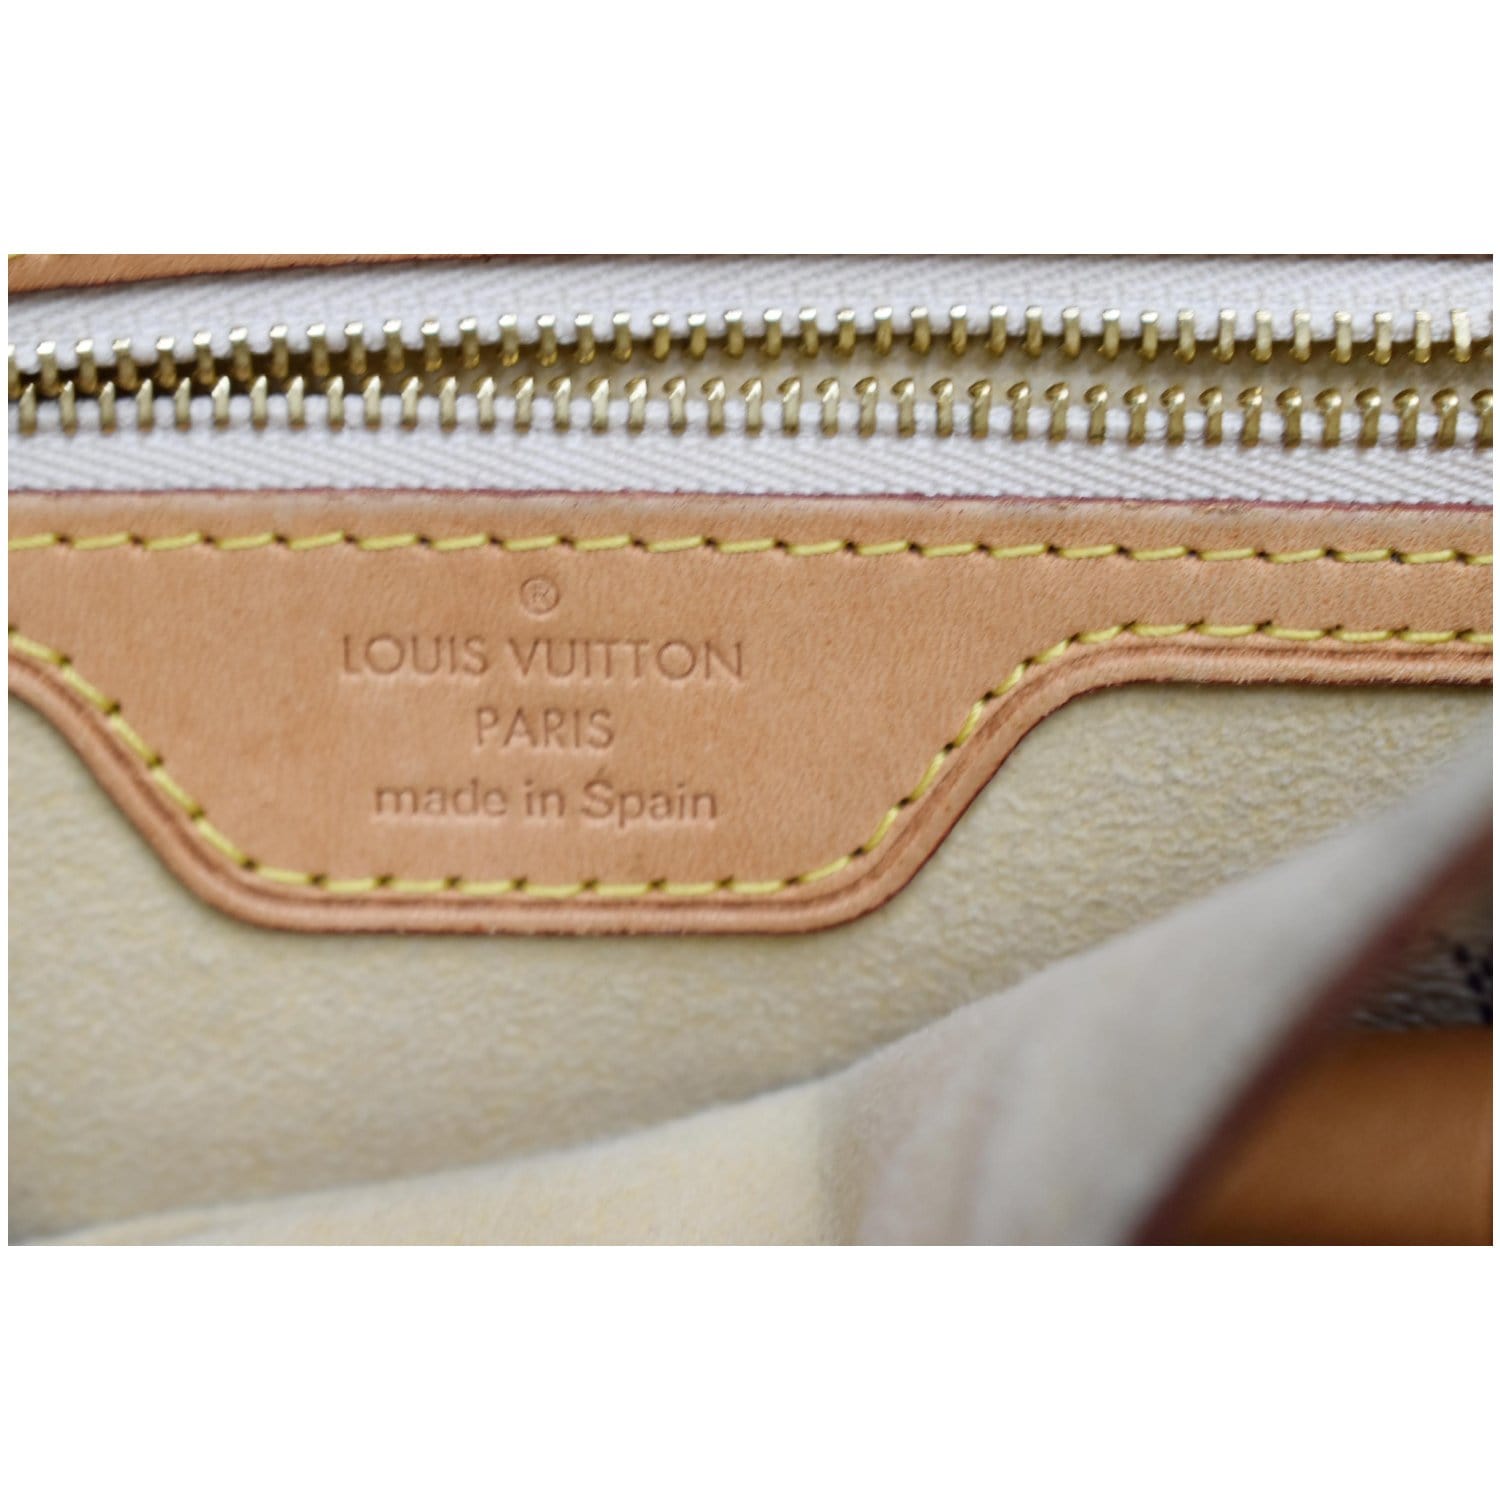 Louis Vuitton Damier Azur Hampstead PM - Neutrals Totes, Handbags -  LOU746407